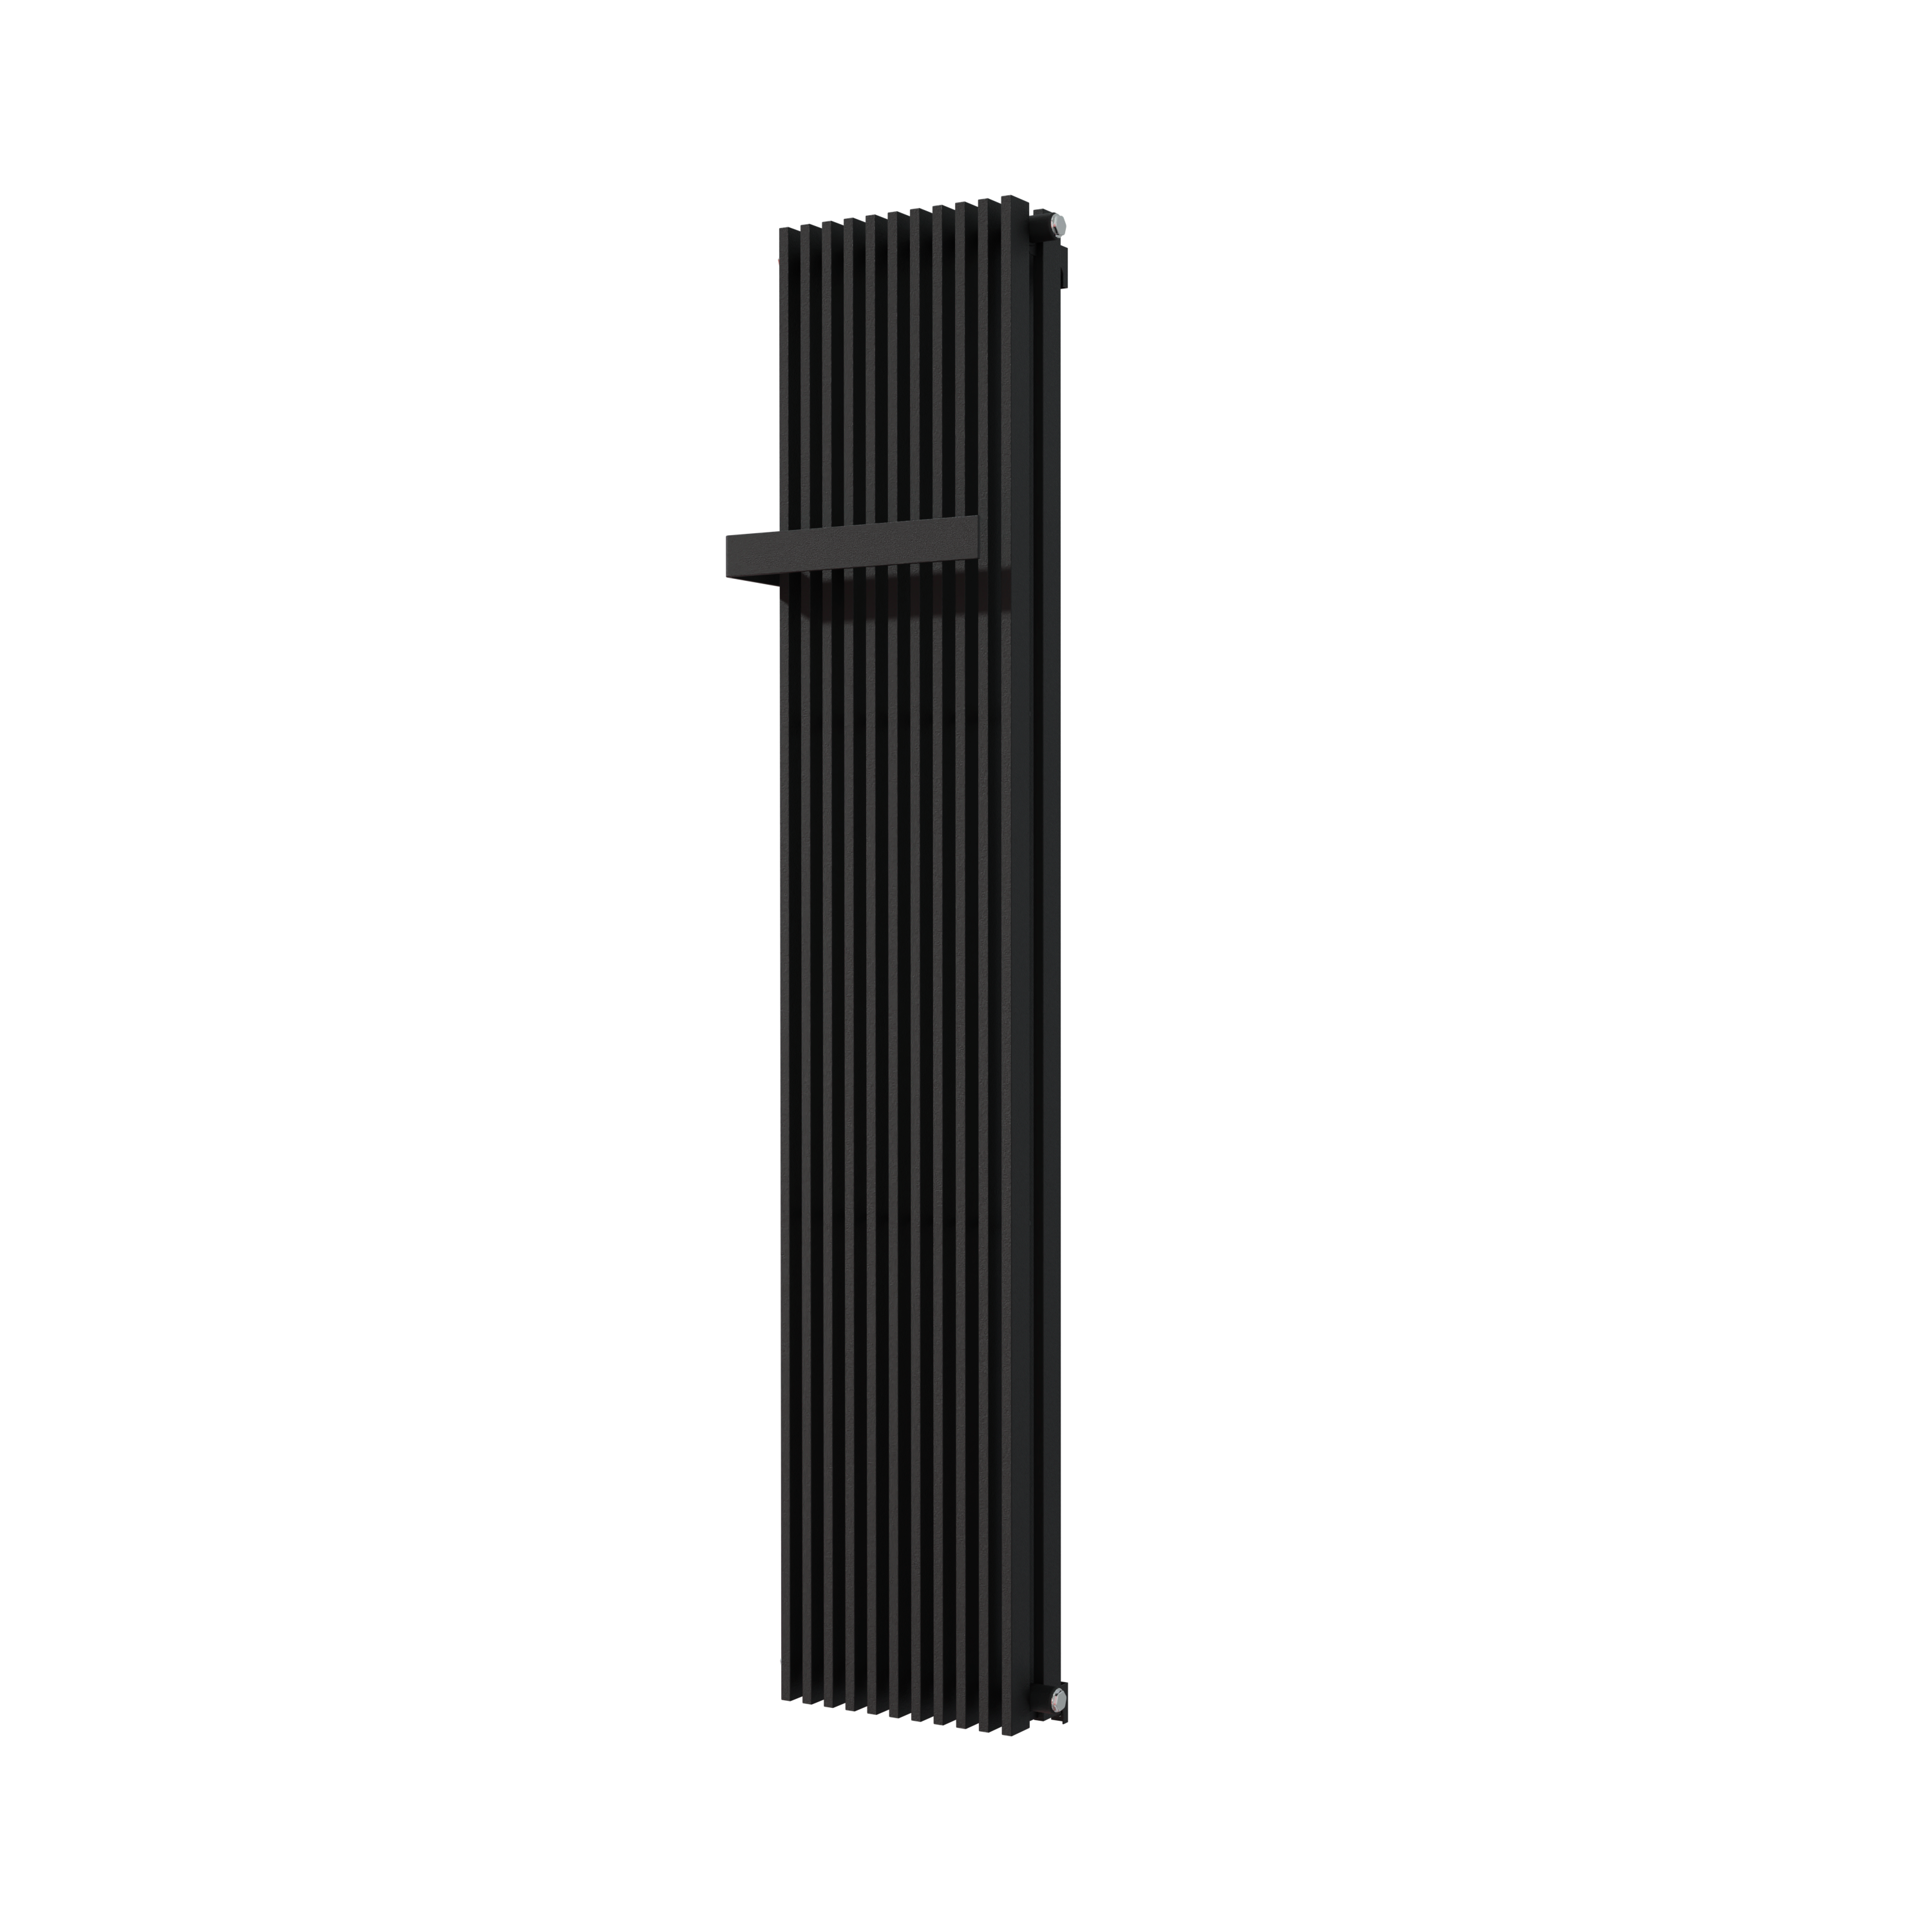 Vipera Corrason dubbele badkamerradiator 40 x 180 cm centrale verwarming mat zwart zij- en middenaansluiting 2,238W